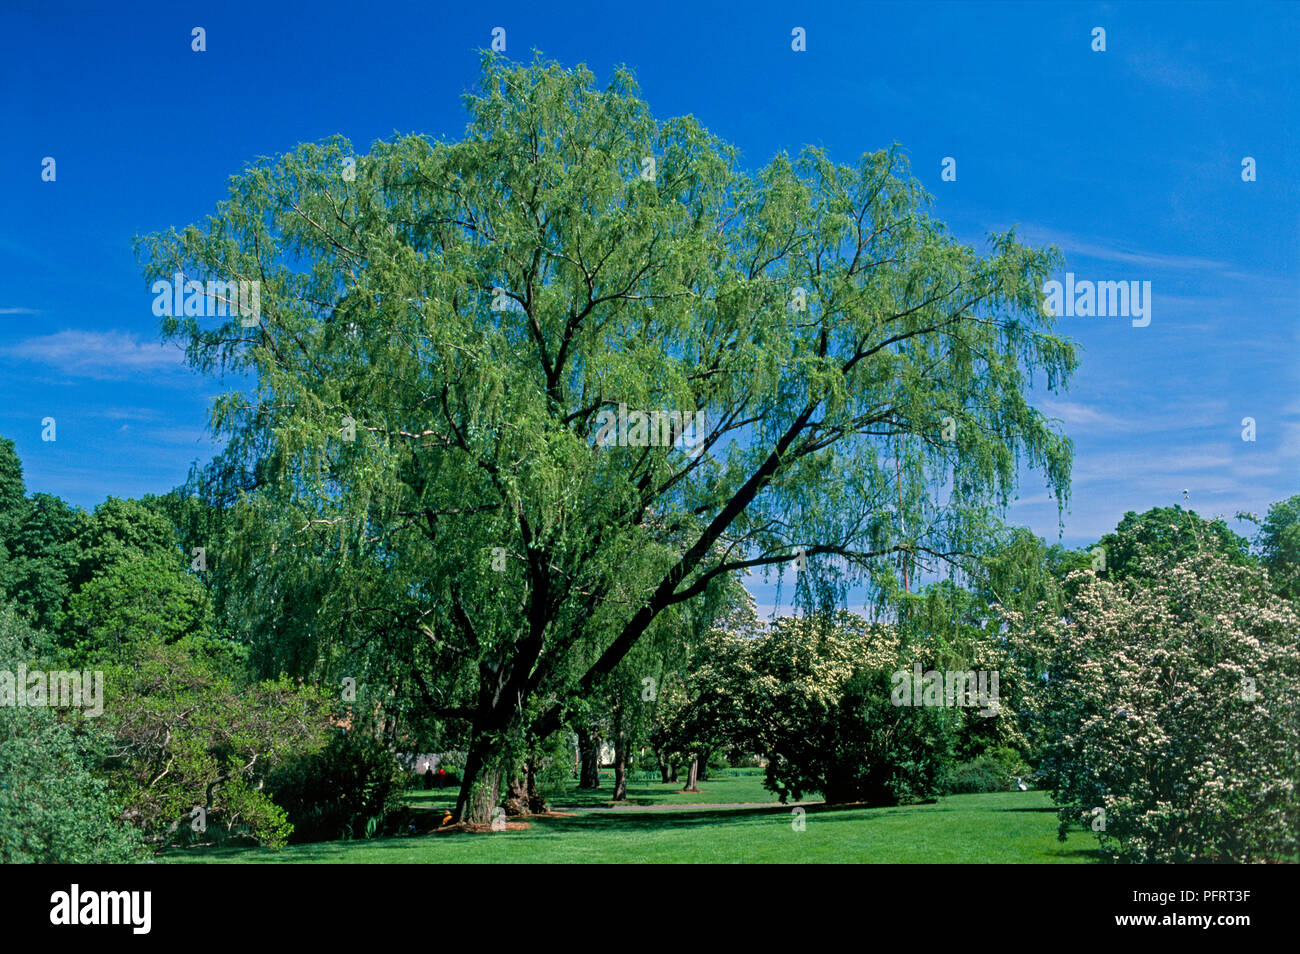 Salix alba 'Tristis', einer großen Trauerweide Baum im Garten durch kleinere Bäume, Sträucher und Gras umgeben Stockfoto